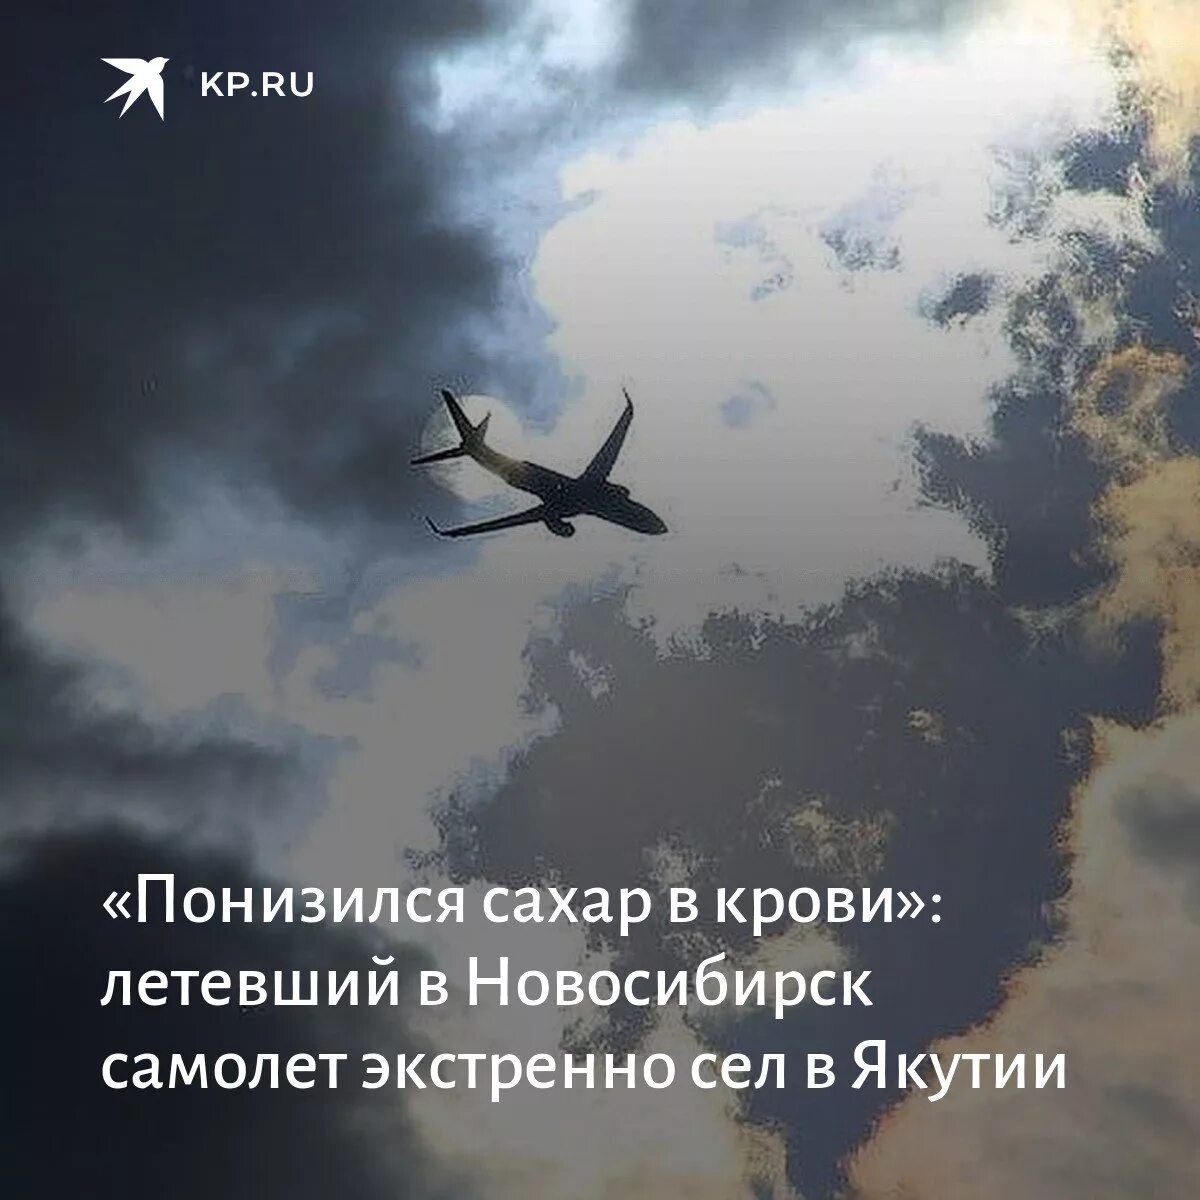 Треснувшее лобовое самолет Новосибирск. Фото самолета умные слова написано. У Боинга лопнуло стекло в полете. Хочу лечу новосибирск